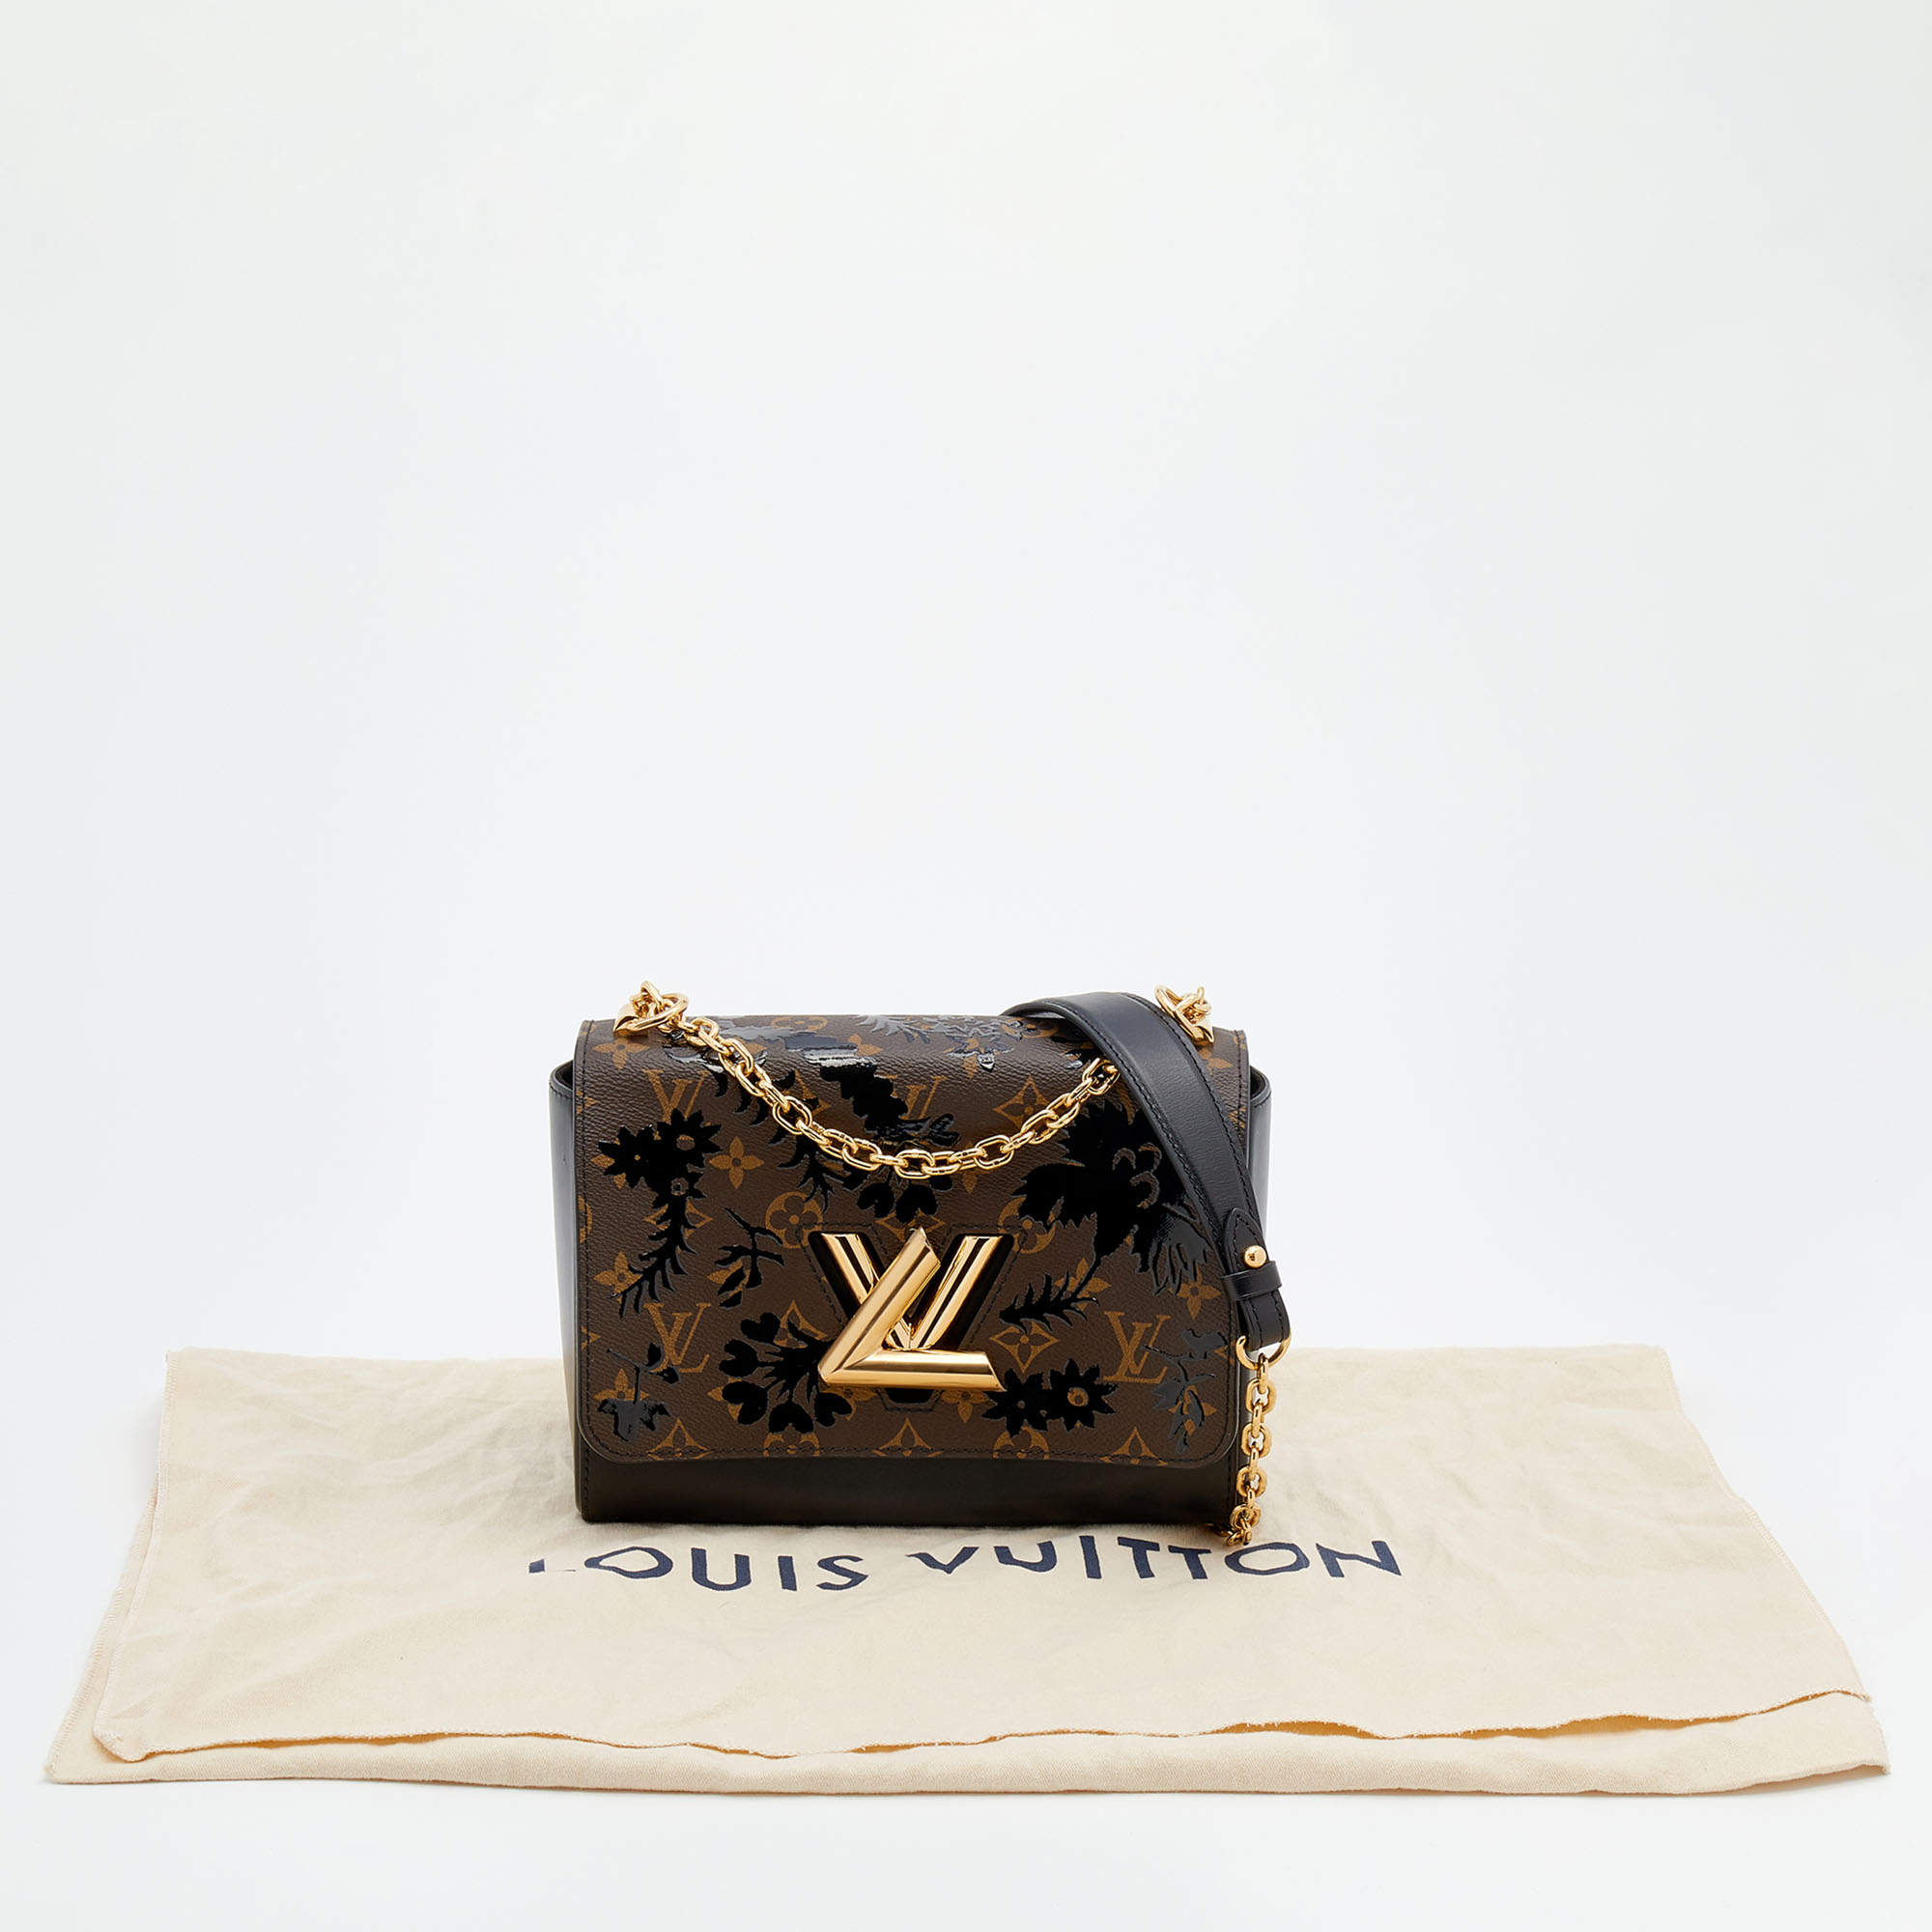 Louis Vuitton Twist Monogram Blossom Bag, Bragmybag